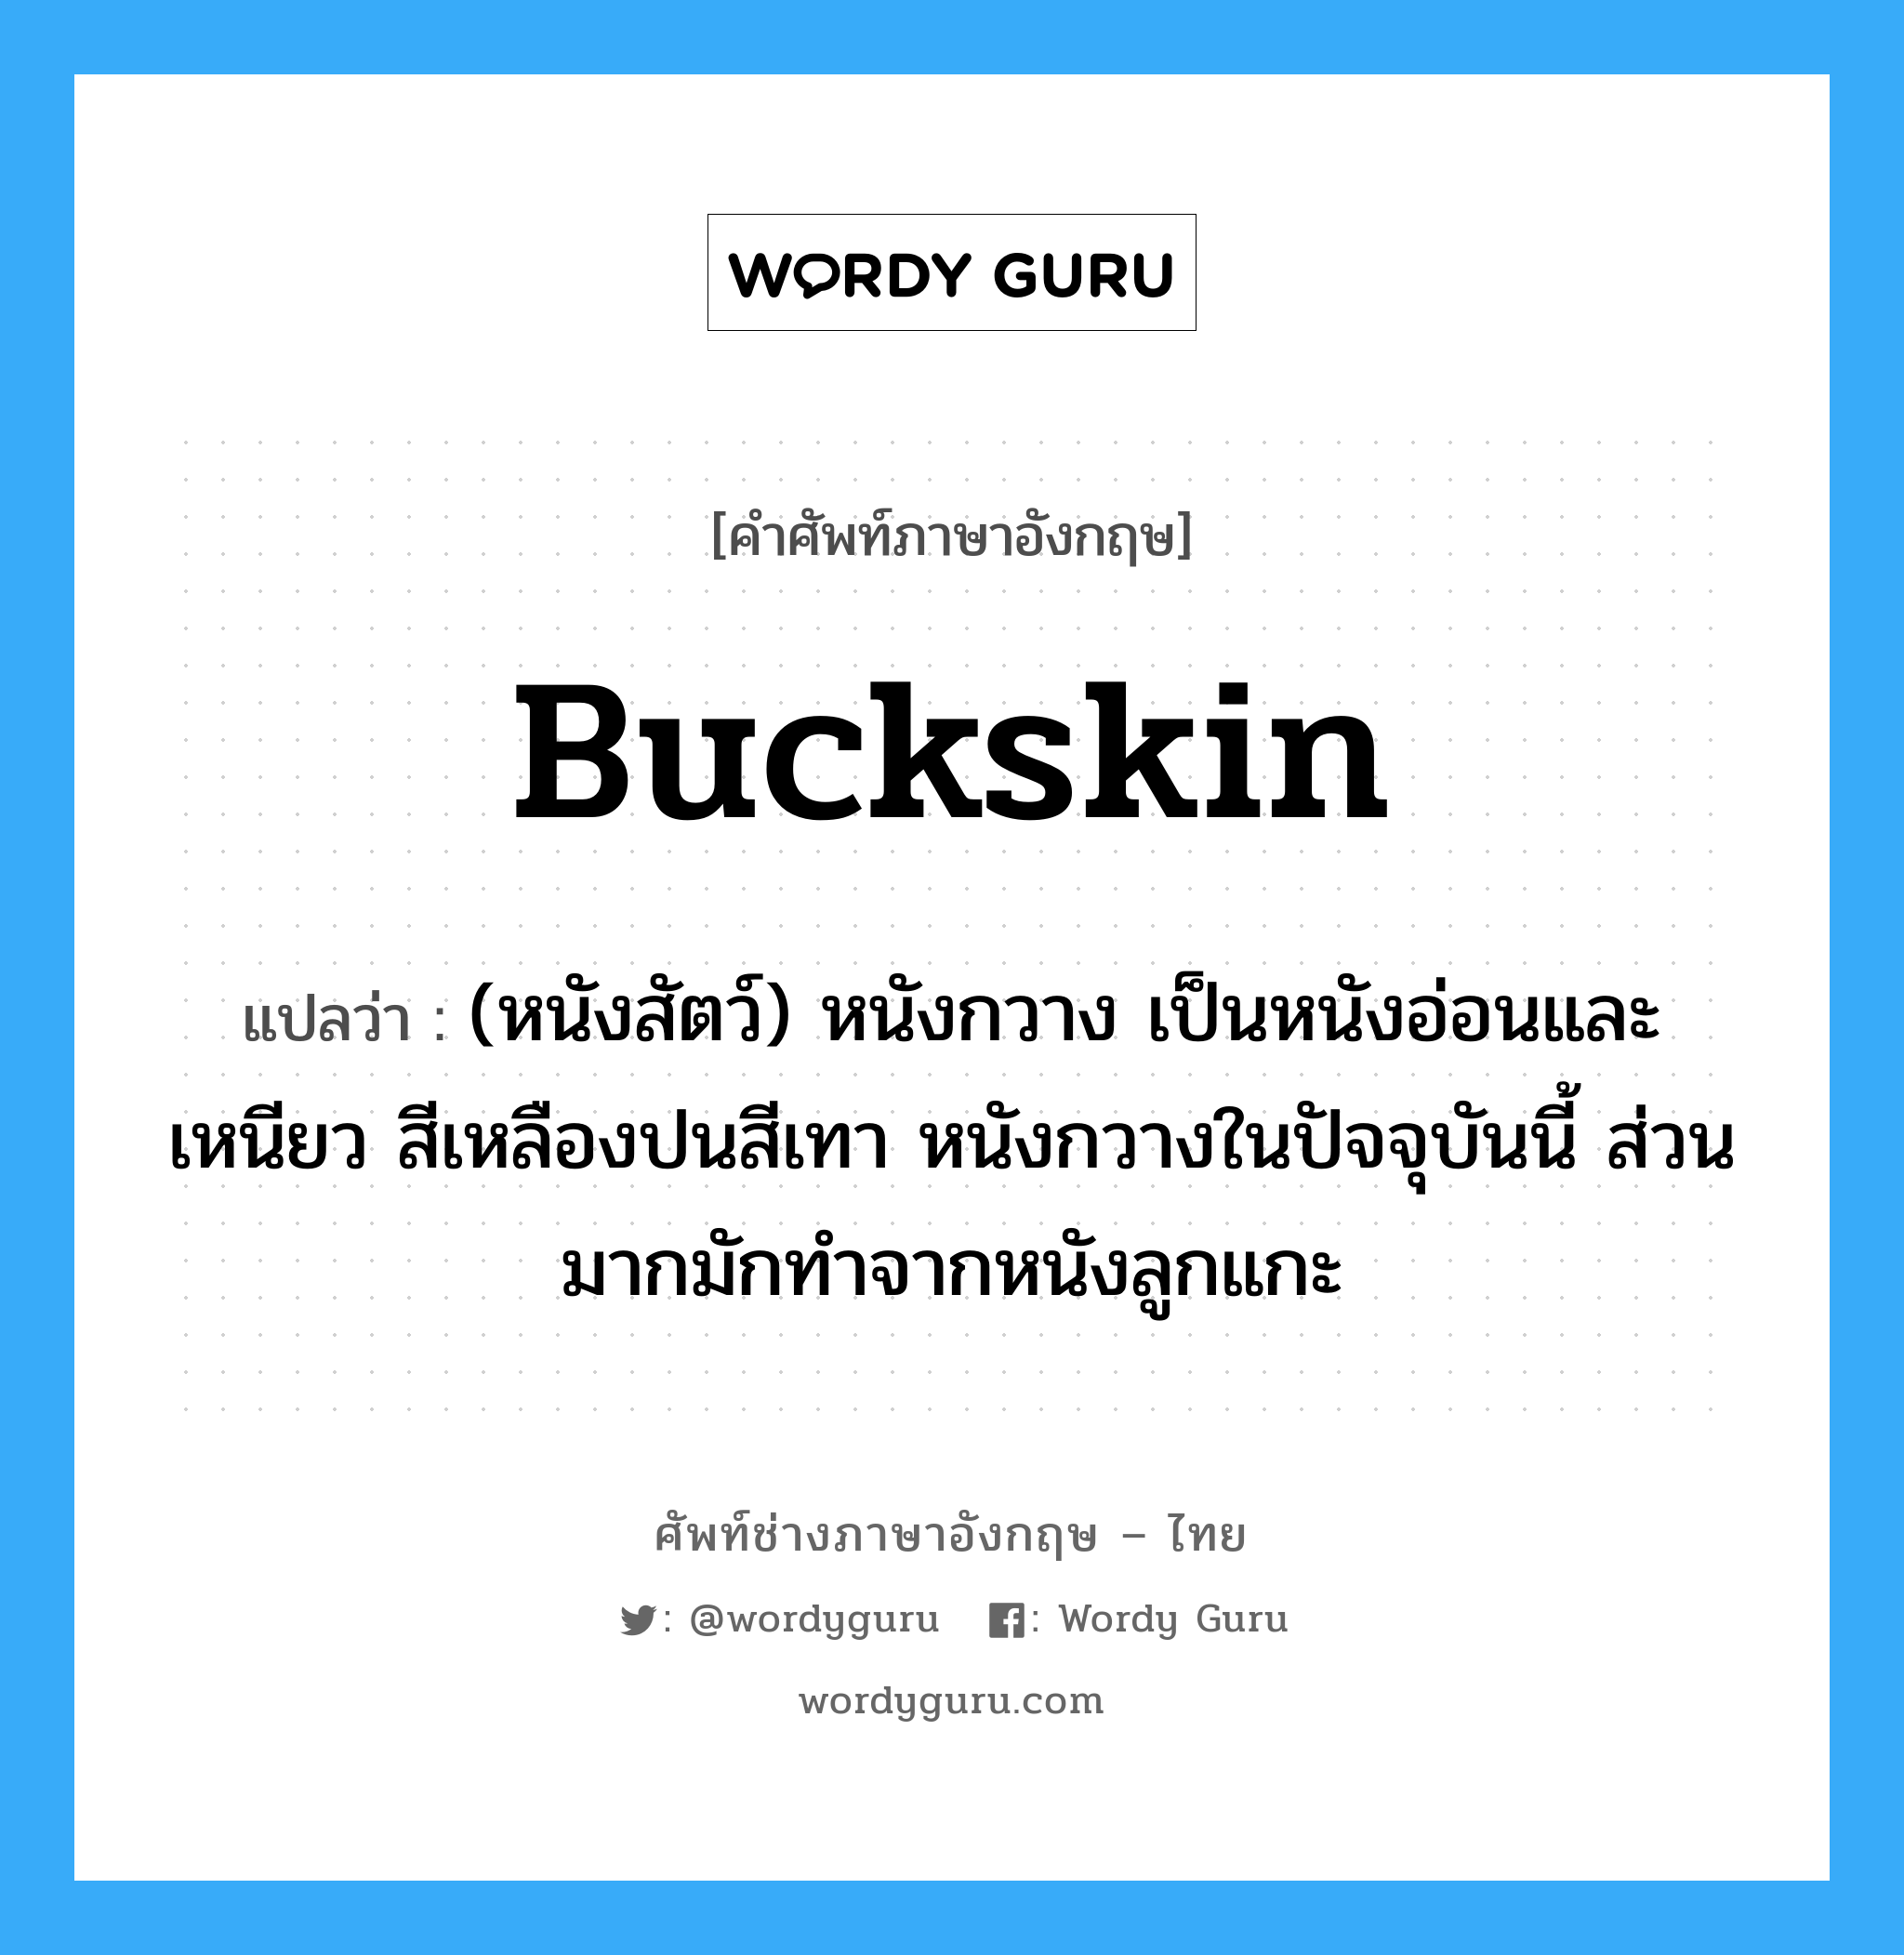 buckskin แปลว่า?, คำศัพท์ช่างภาษาอังกฤษ - ไทย buckskin คำศัพท์ภาษาอังกฤษ buckskin แปลว่า (หนังสัตว์) หนังกวาง เป็นหนังอ่อนและเหนียว สีเหลืองปนสีเทา หนังกวางในปัจจุบันนี้ ส่วนมากมักทำจากหนังลูกแกะ